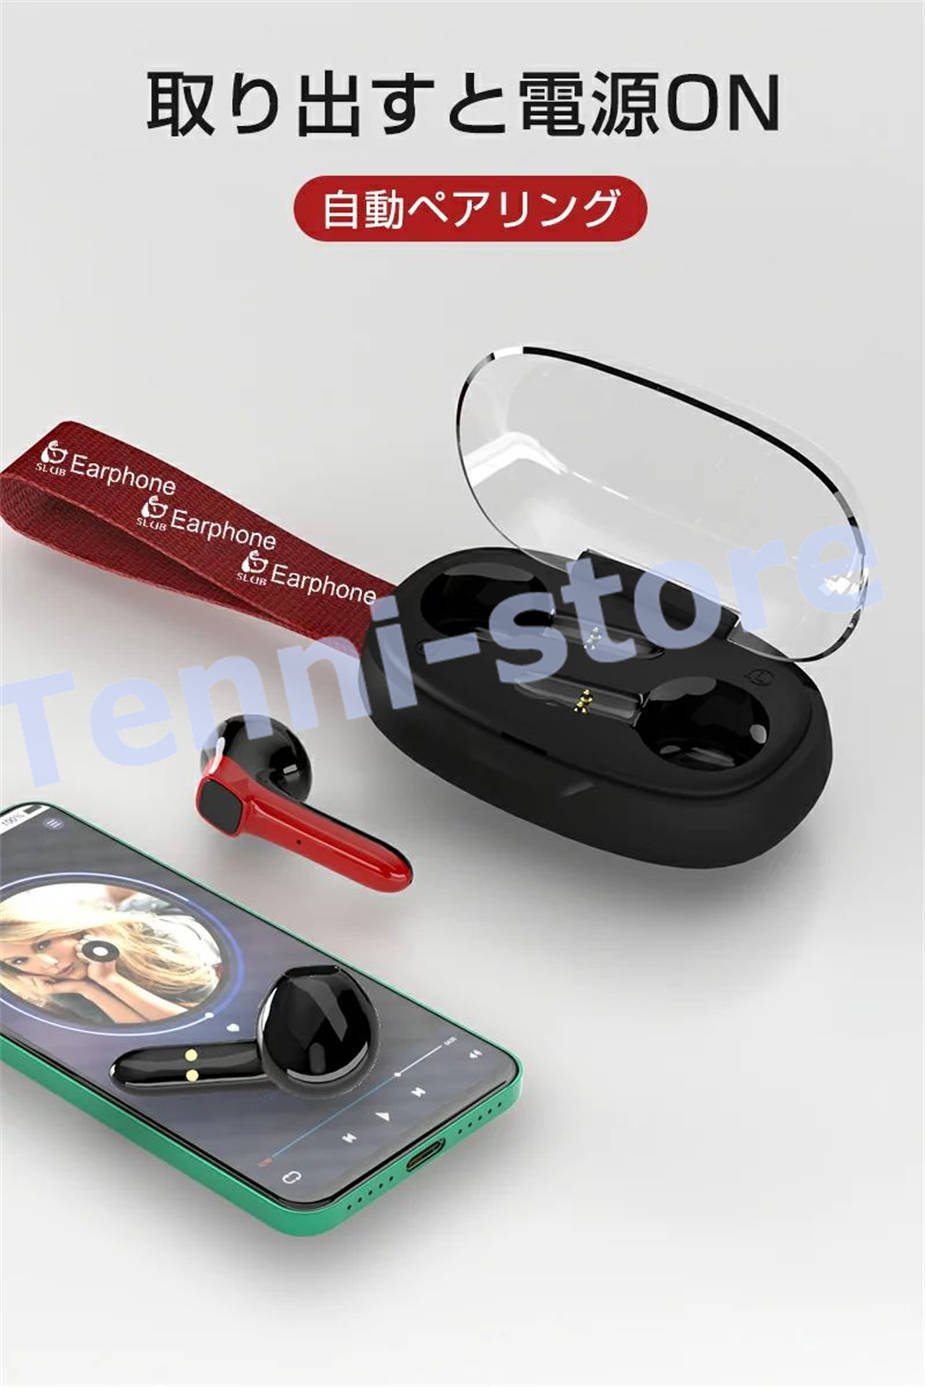 ワイヤレスイヤホン Bluetooth5.0 ヘッドセット イヤホン 防水防汗 充電ケース付き HI...